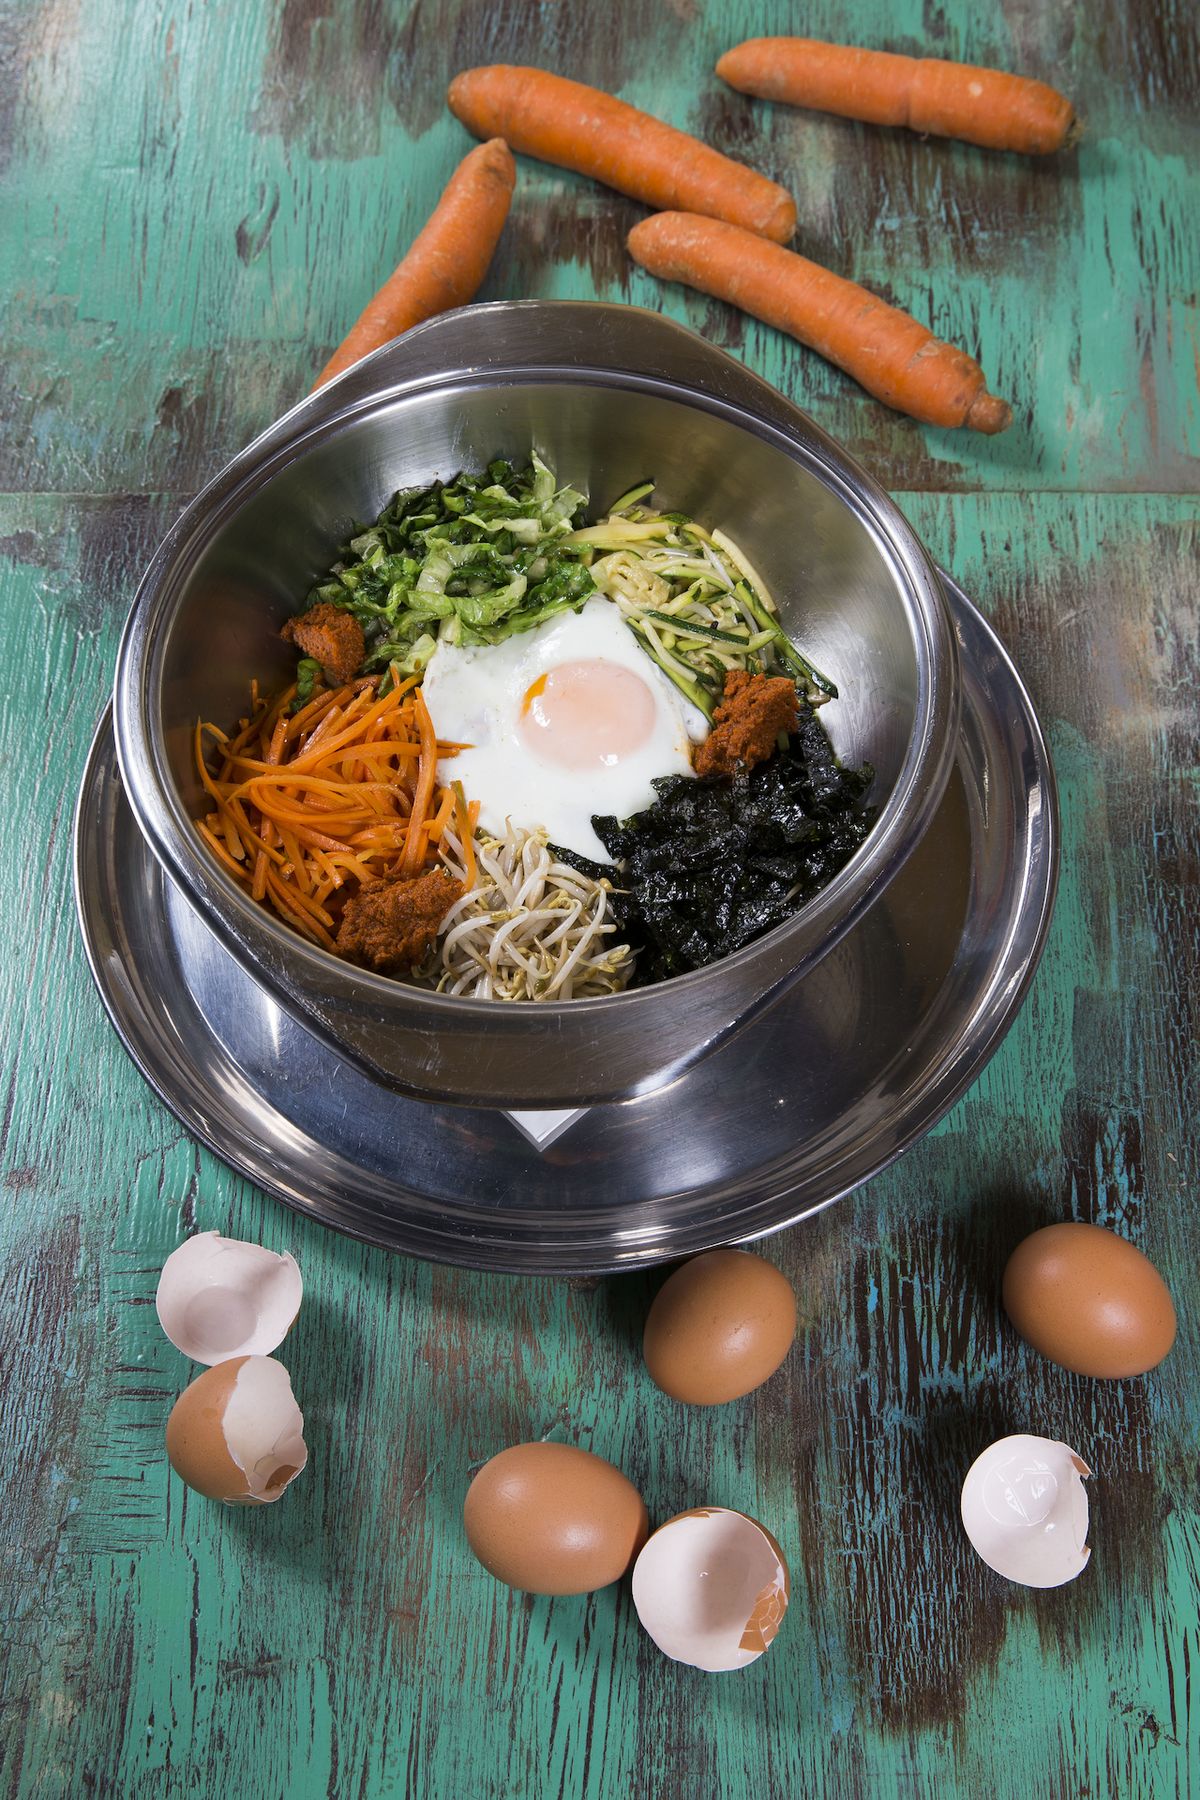 Korejské jídlo bibimbap se připravuje z rýže a přísad, které se poskládají do misky a strávník si pak vše sám promíchá. Může být vegetariánský i masitý.